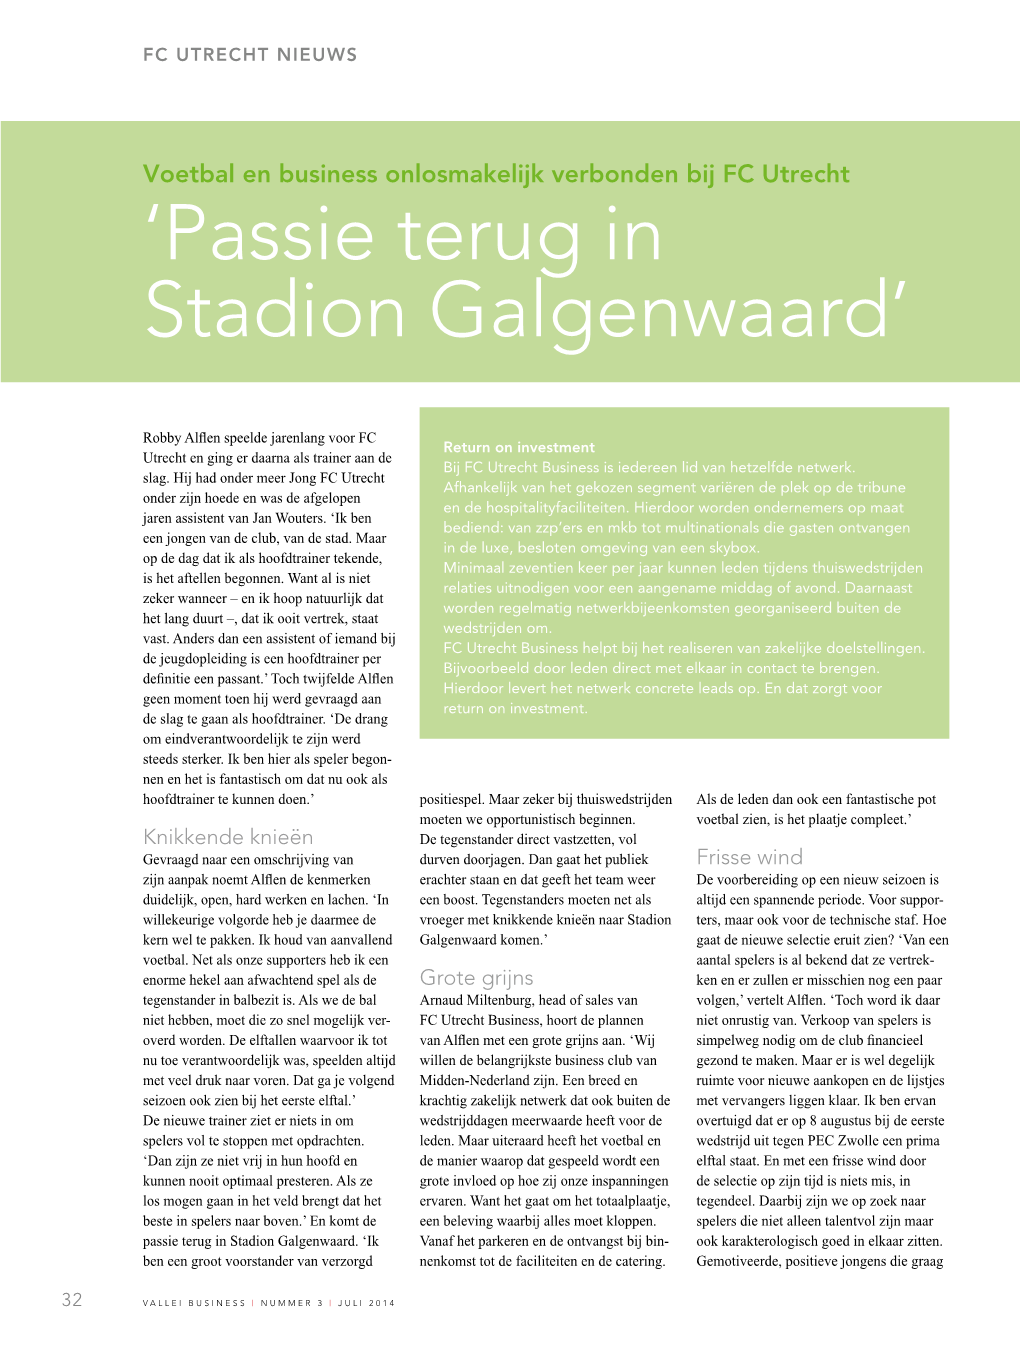 'Passie Terug in Stadion Galgenwaard'